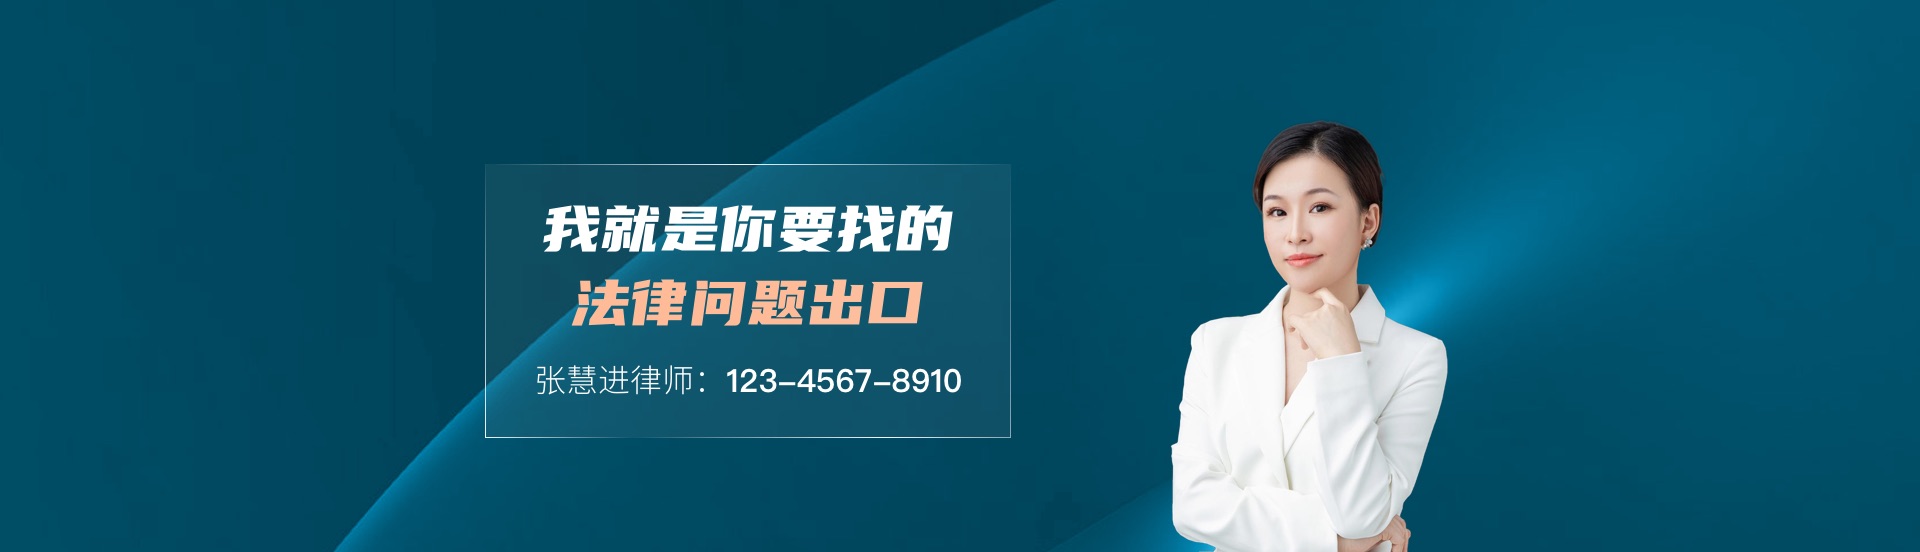 谢慕青的律师团队网站